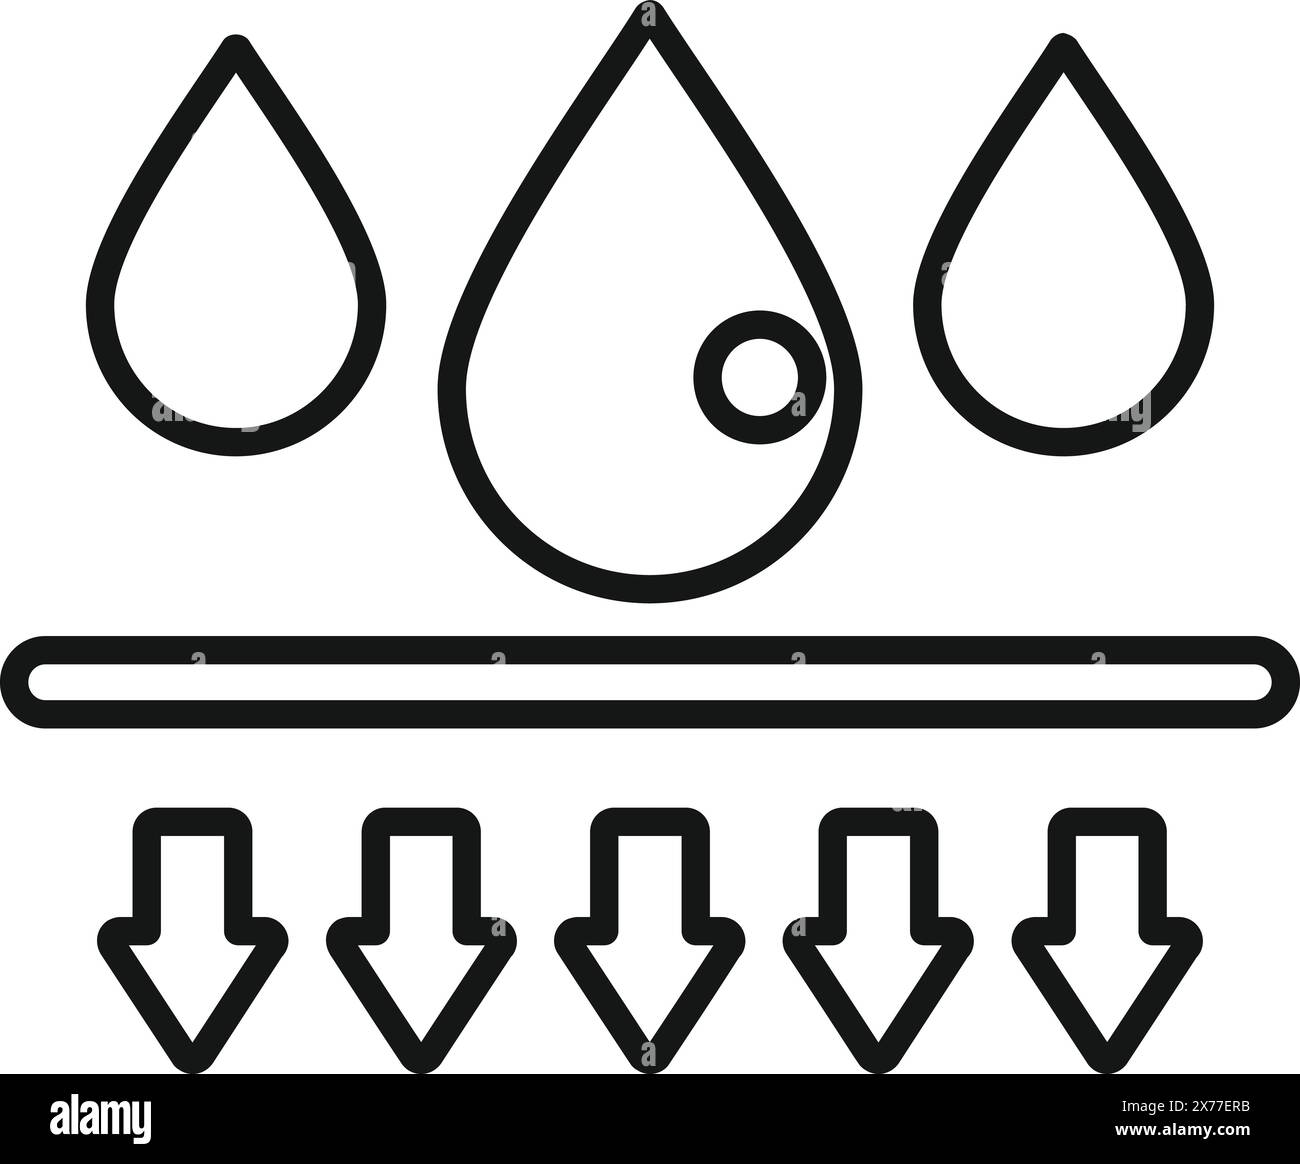 Efficiente icona di filtraggio dell'acqua con goccioline, frecce e simbolo di purificazione per un trattamento pulito e sostenibilità in bianco e nero vettoriale Illustrazione Vettoriale